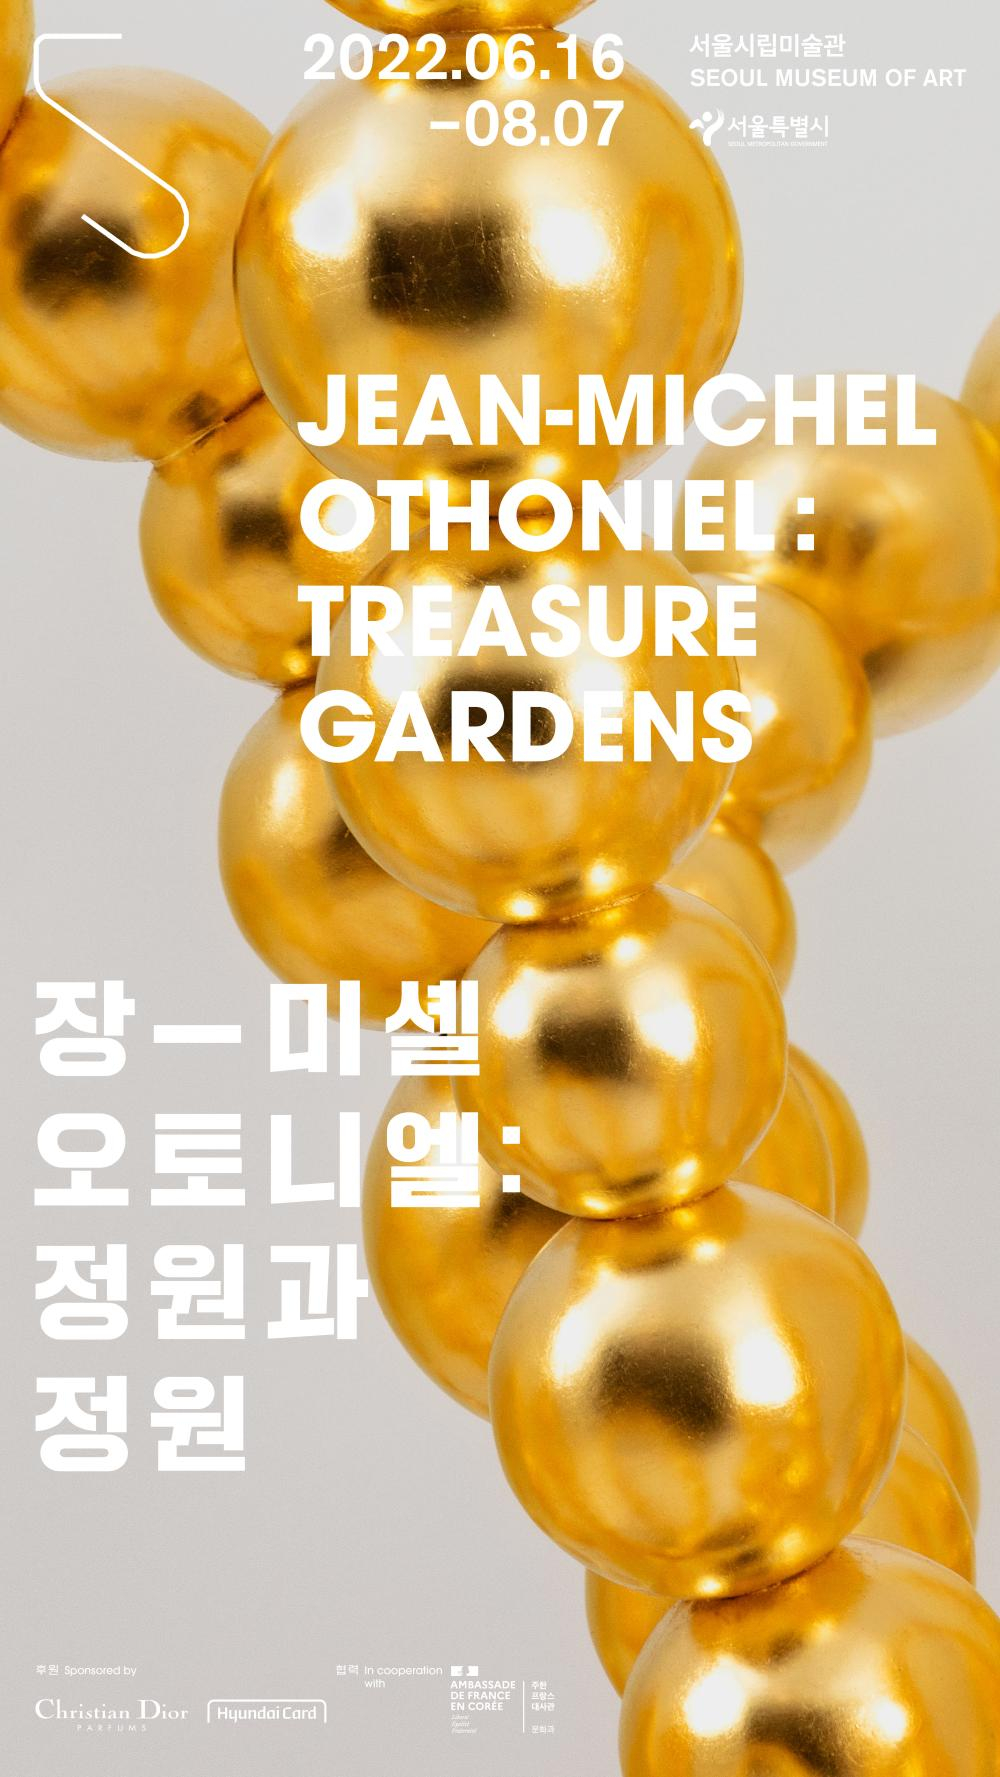 〈장-미셸 오토니엘. : 정원과 정원〉